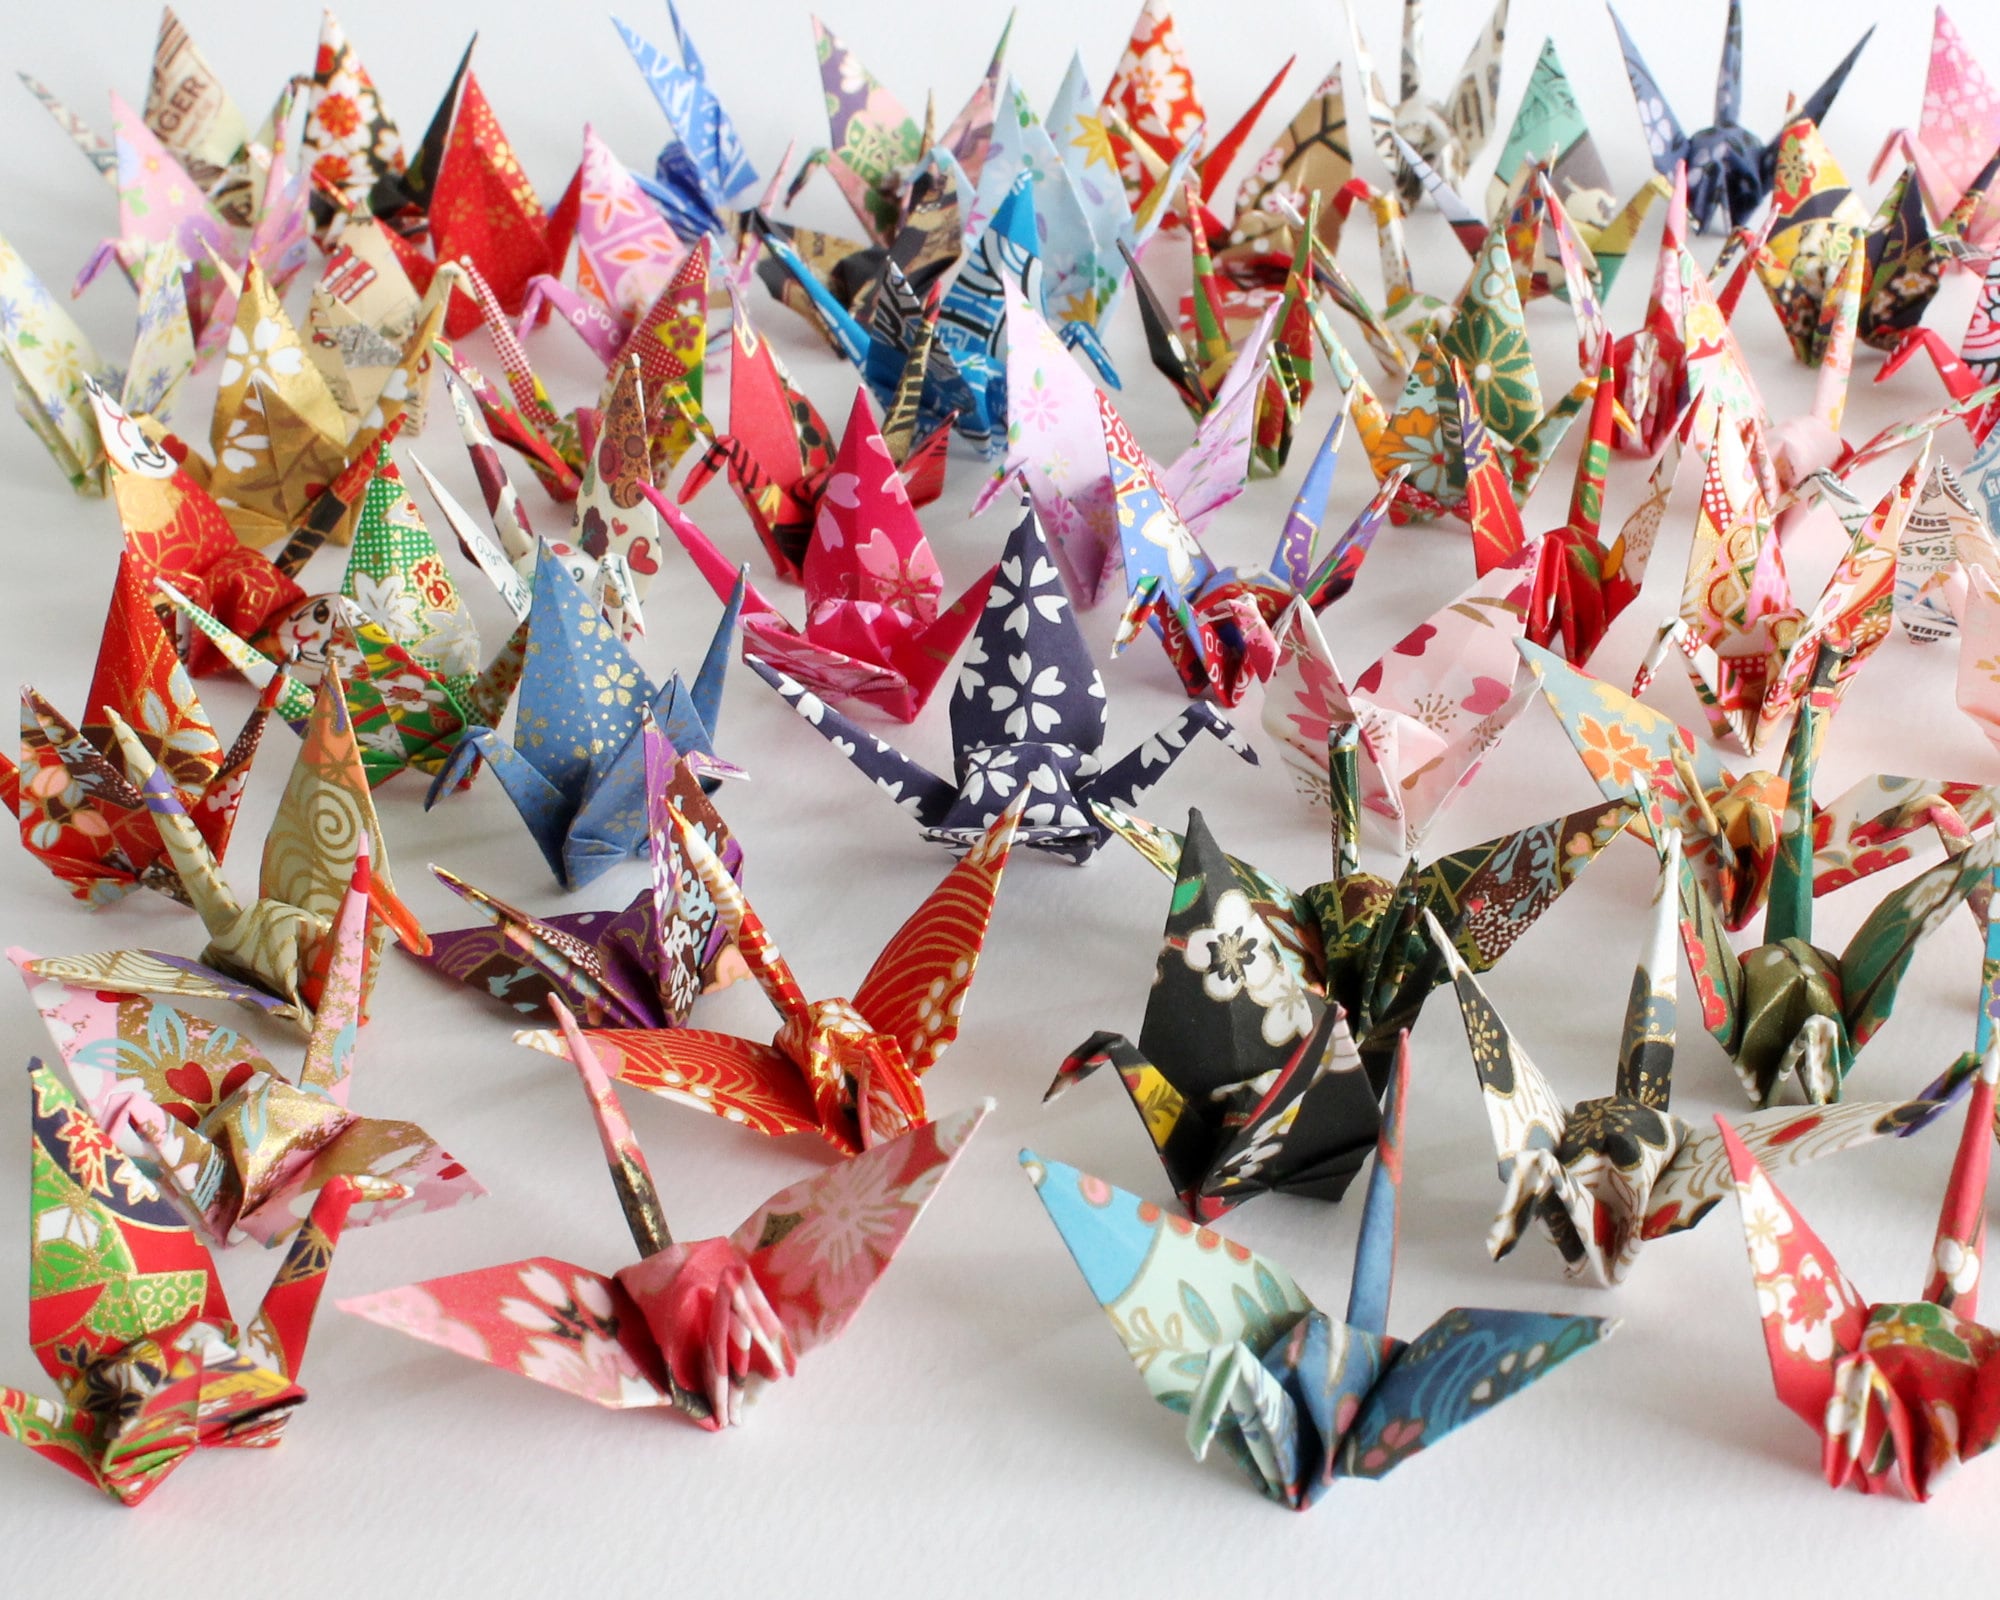 36 Views Mount Fuji 46 Large Origami Cranes Origami Paper Cranes